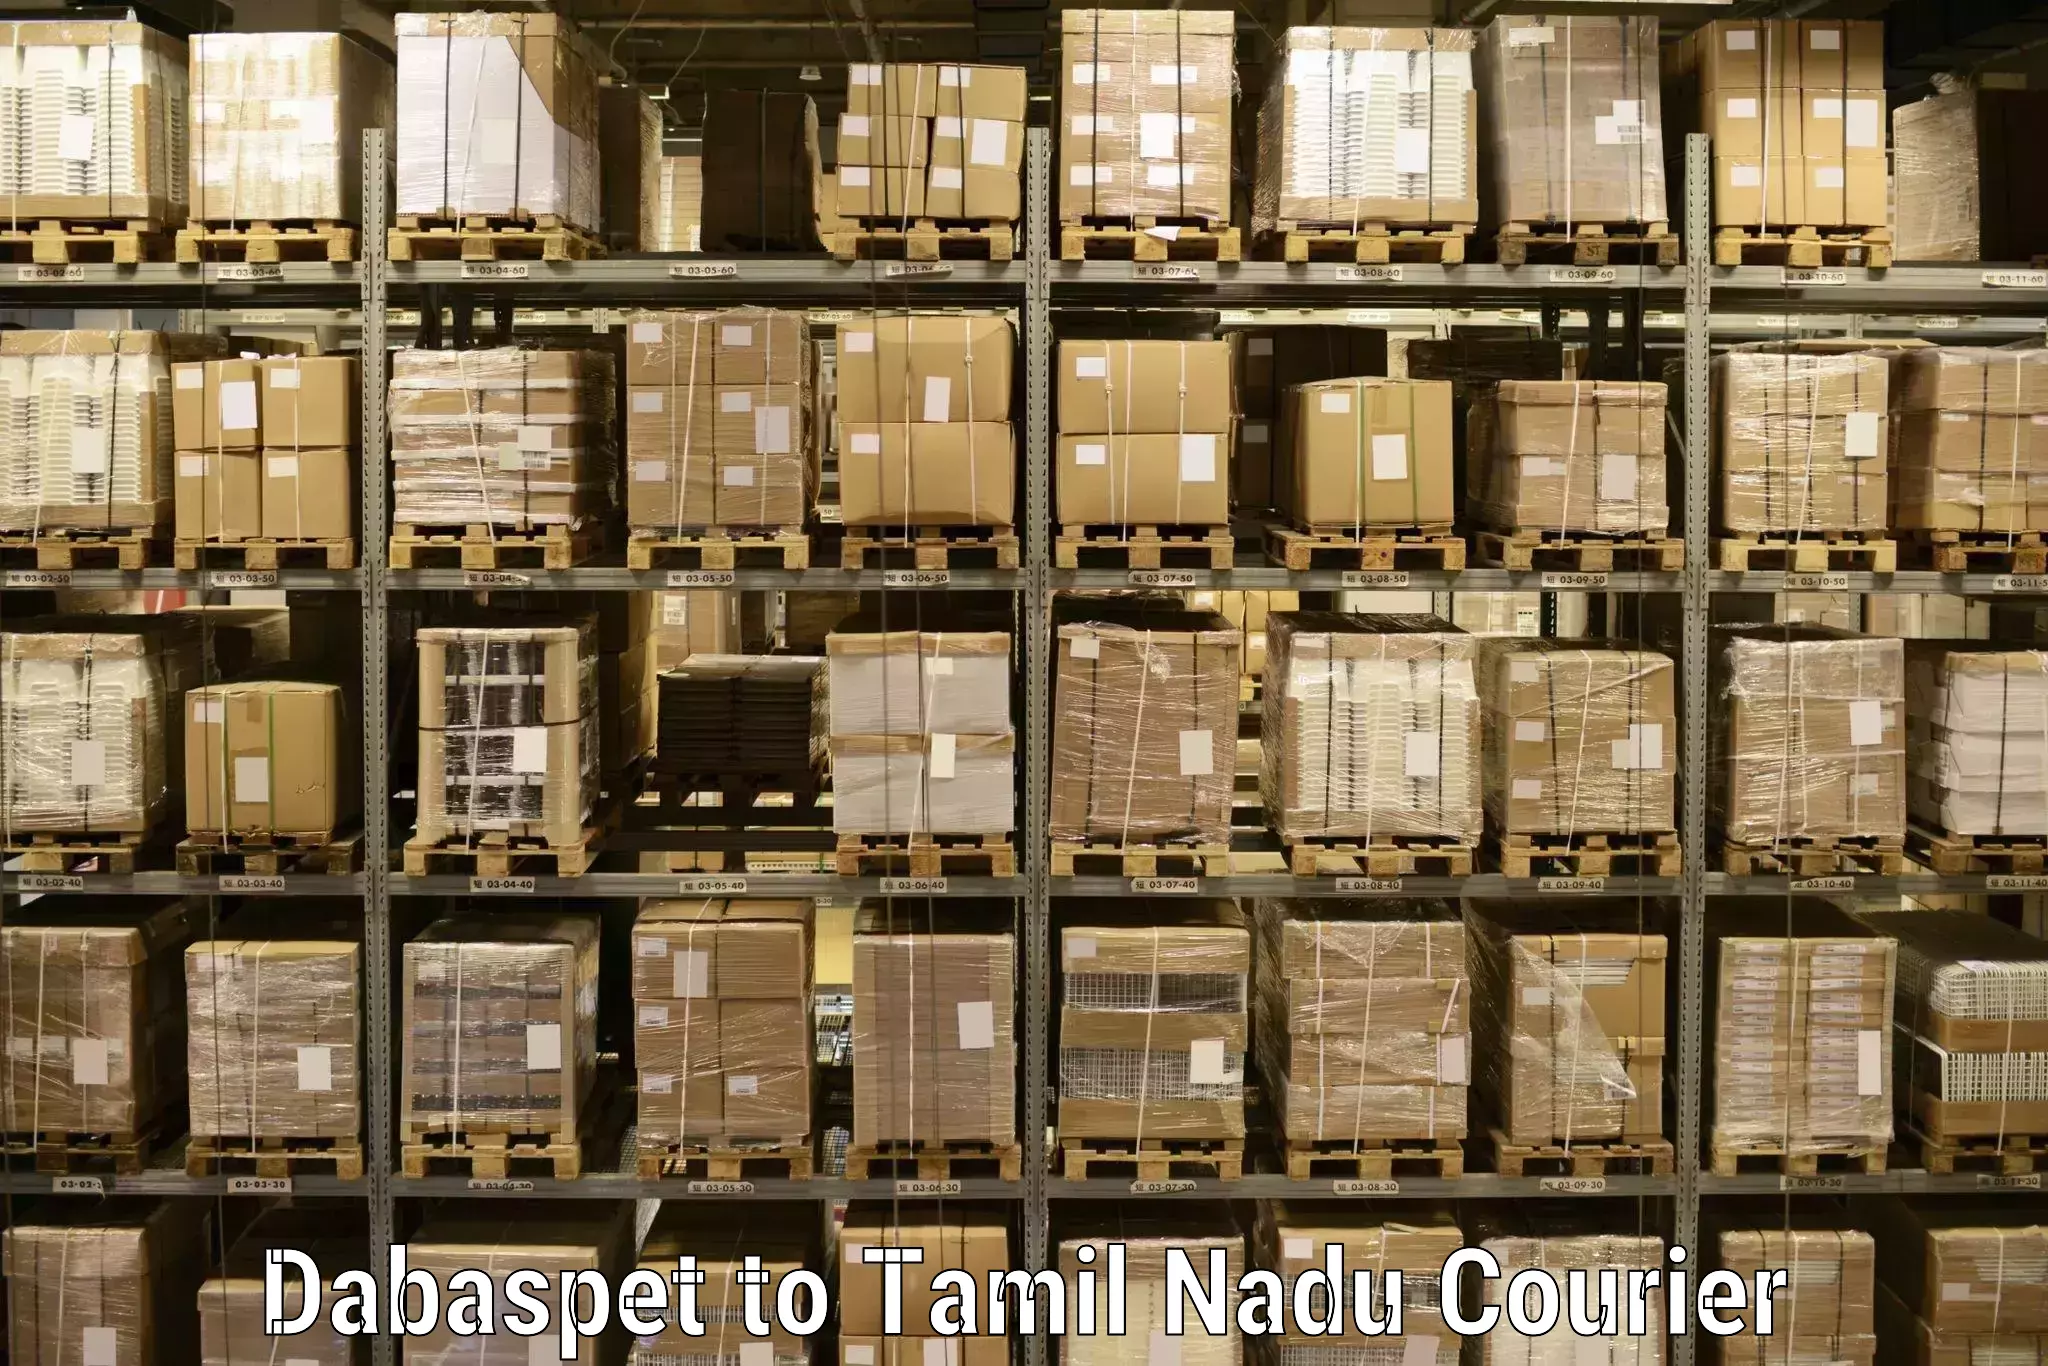 Door-to-door freight service Dabaspet to Ramanathapuram